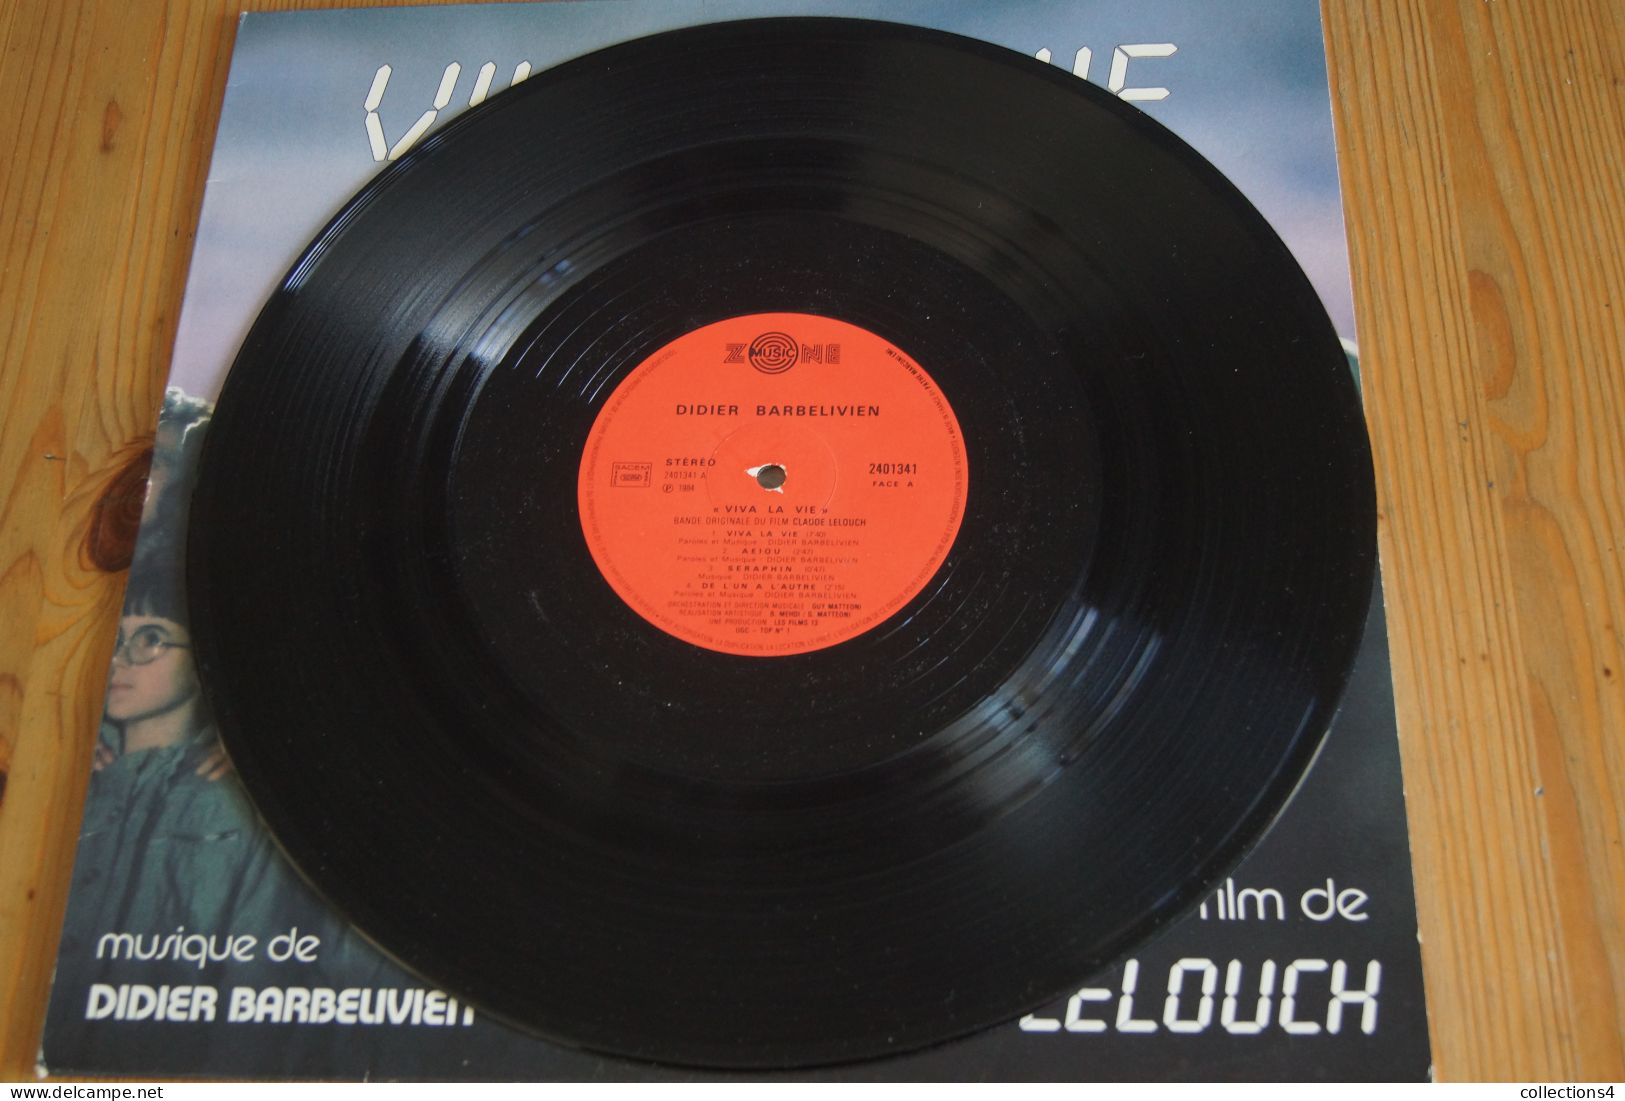 DIDIER BARBELIVIEN VIVA LA VIE AZNAVOUR PICCOLI TRINTIGNANT ANOUK AIME LELOUCH LP DU FILM 1984 VALEUR+   ELECTRO NEW AGE - Musique De Films